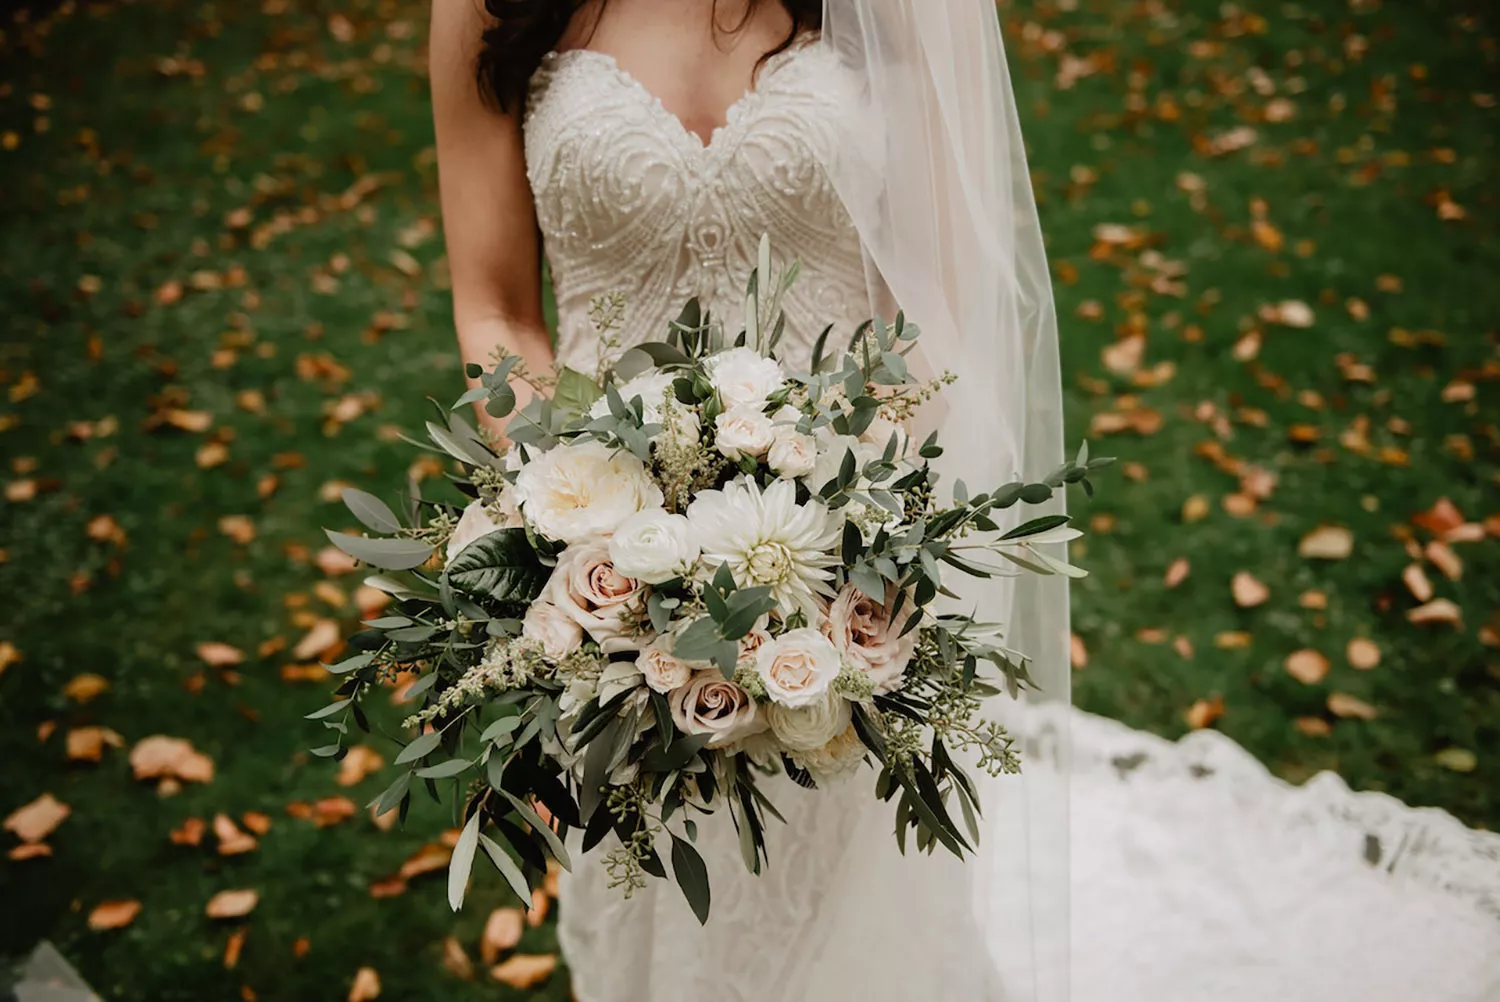 捧花的大小需視每位新娘身形，確保花束不會過大掩蓋身形。